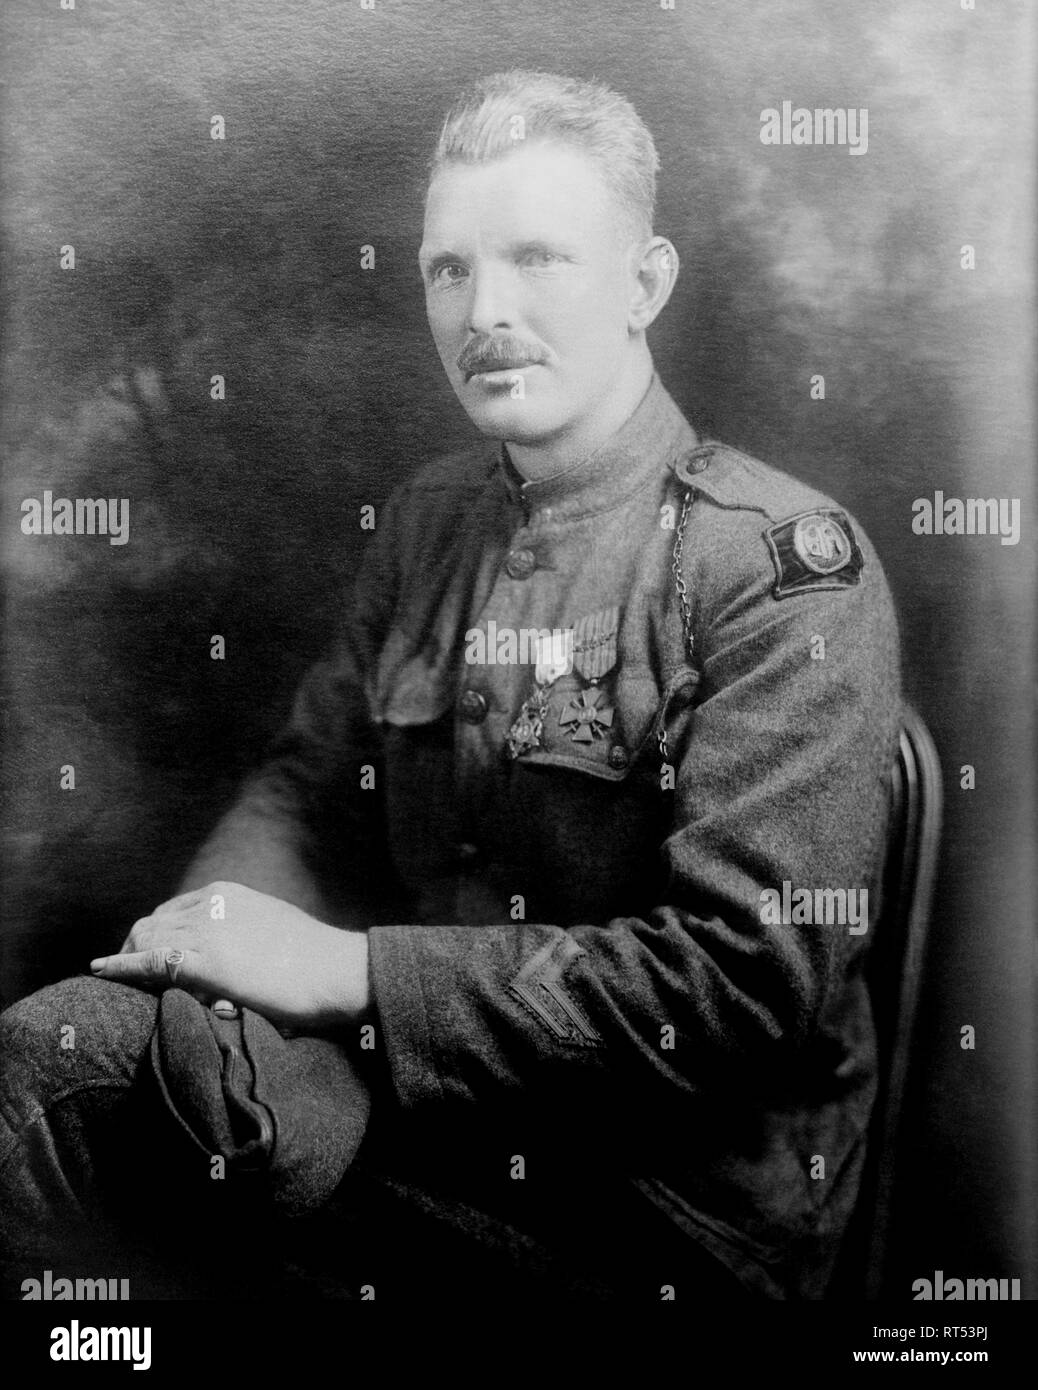 Weltkrieg ein Porträt von Sergeant Alvin York. Stockfoto